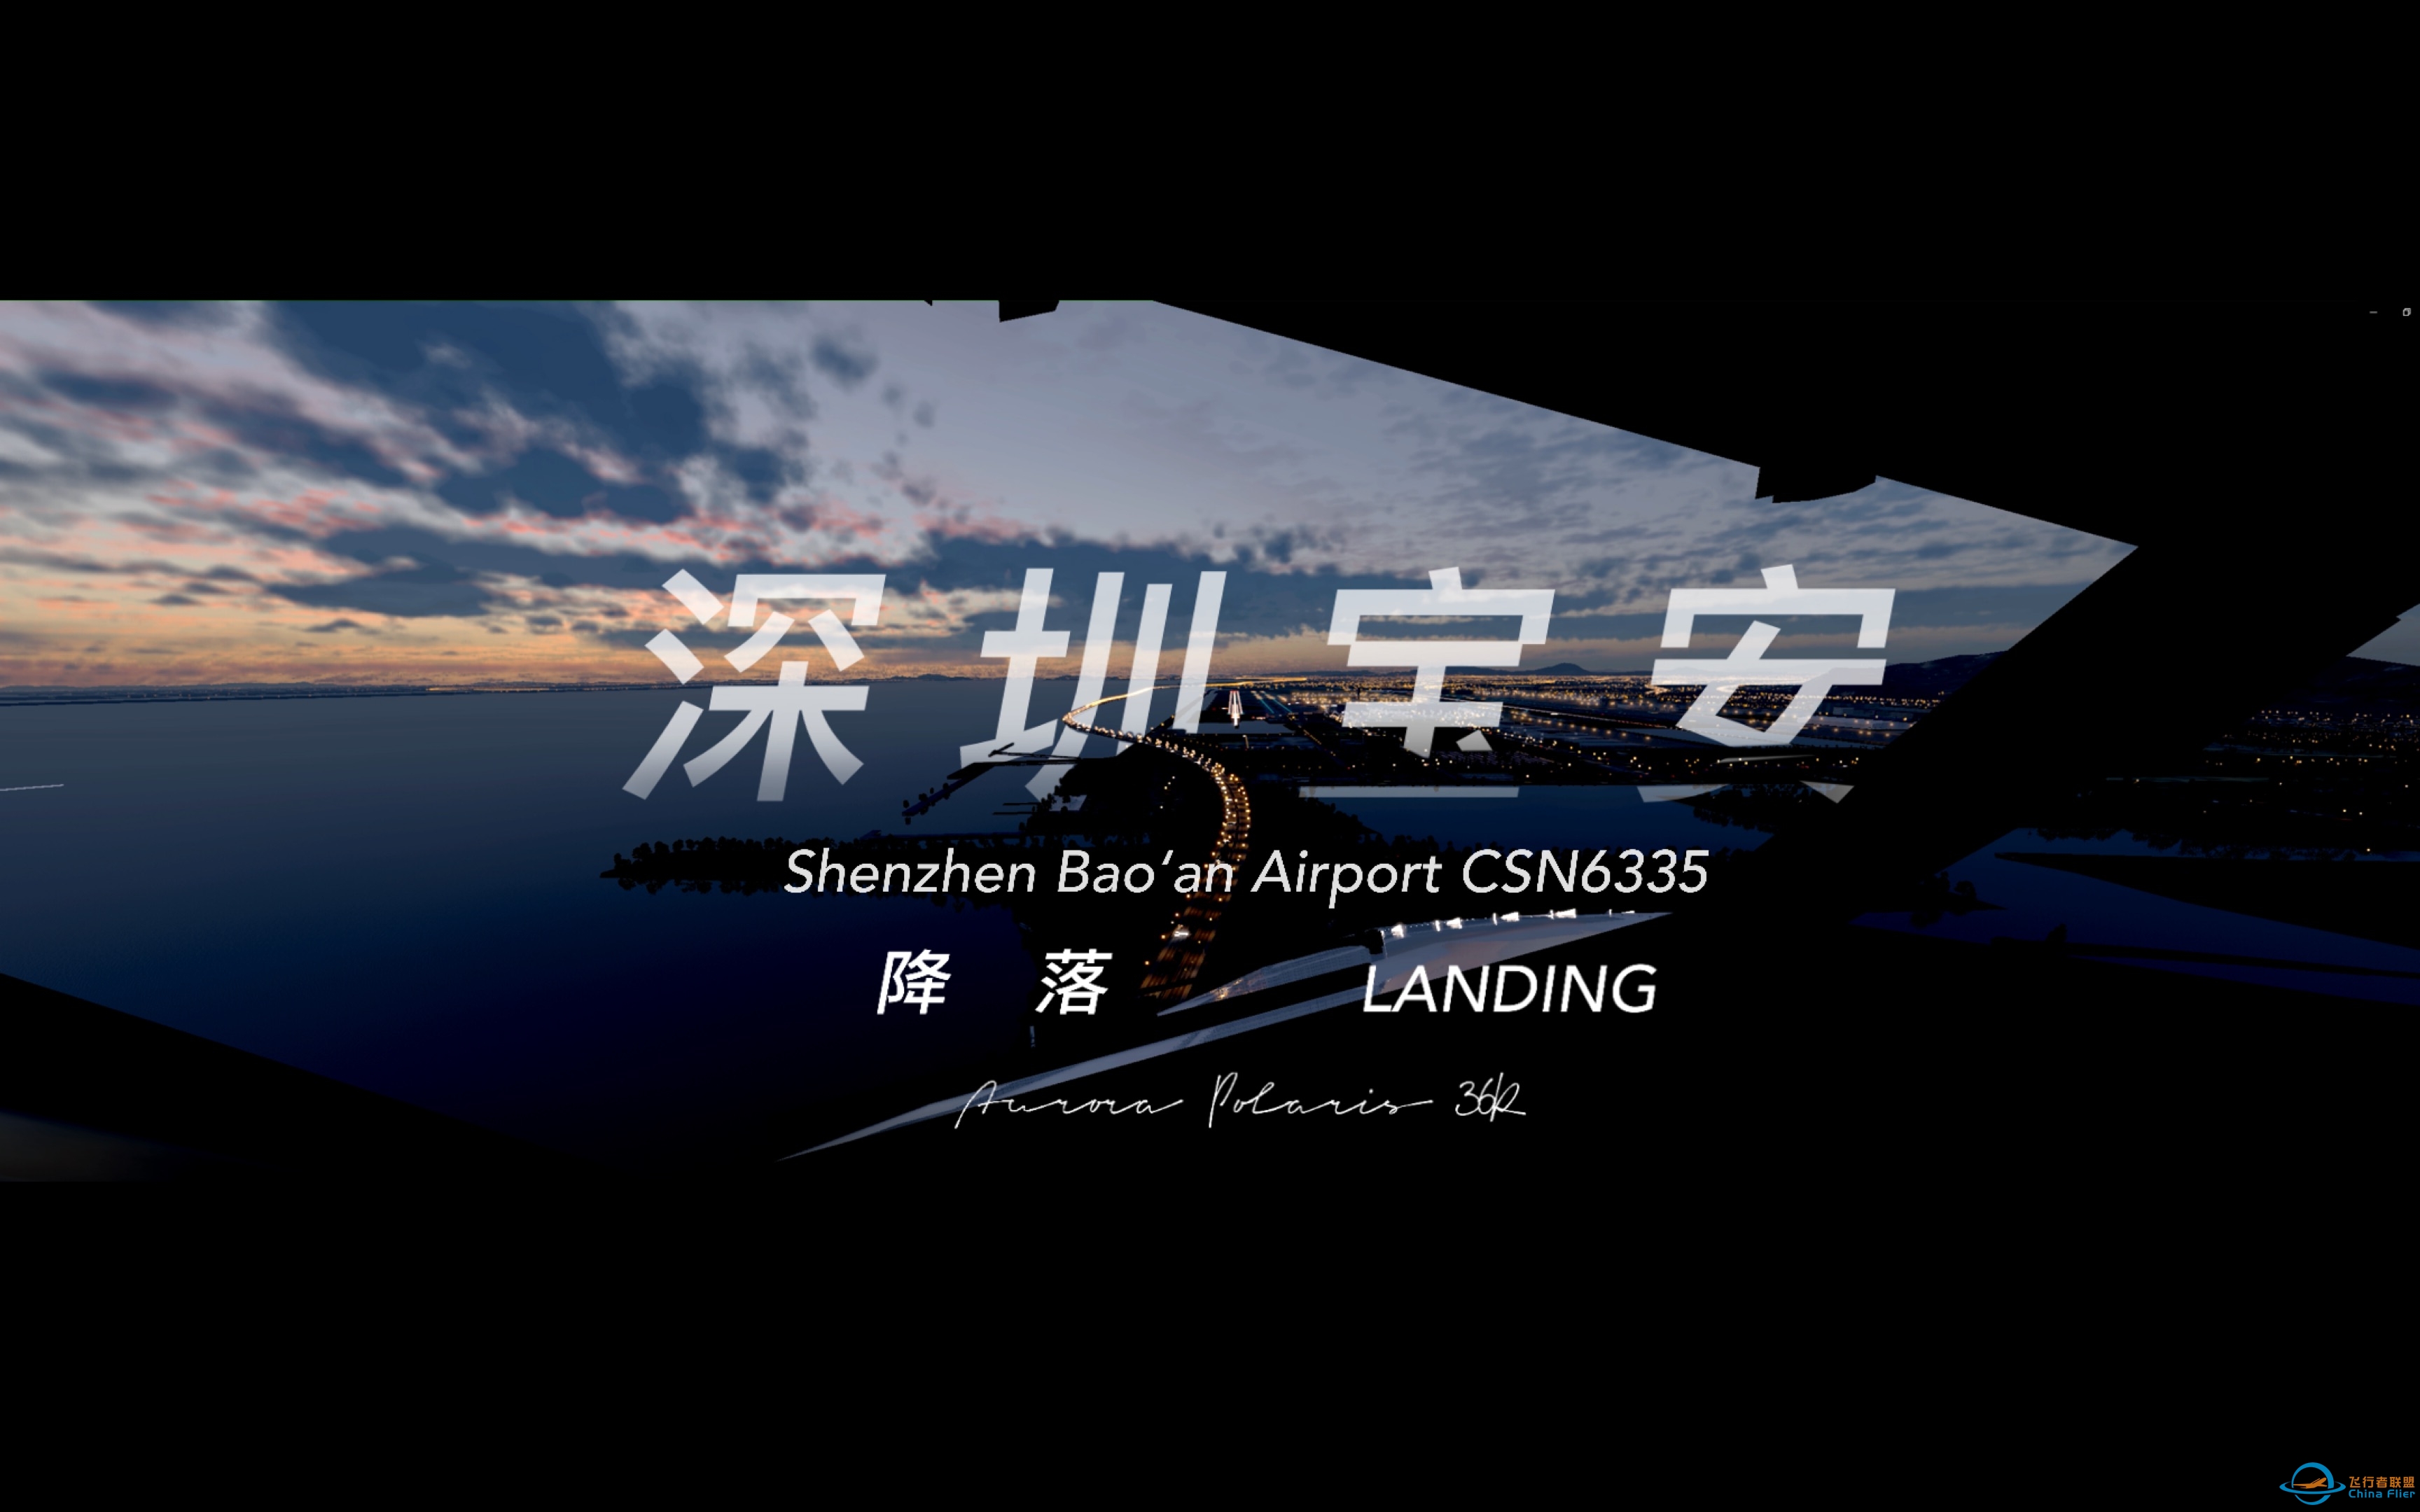 [XPlane12] 中国南方航空737降落于深圳宝安国际机场-997 